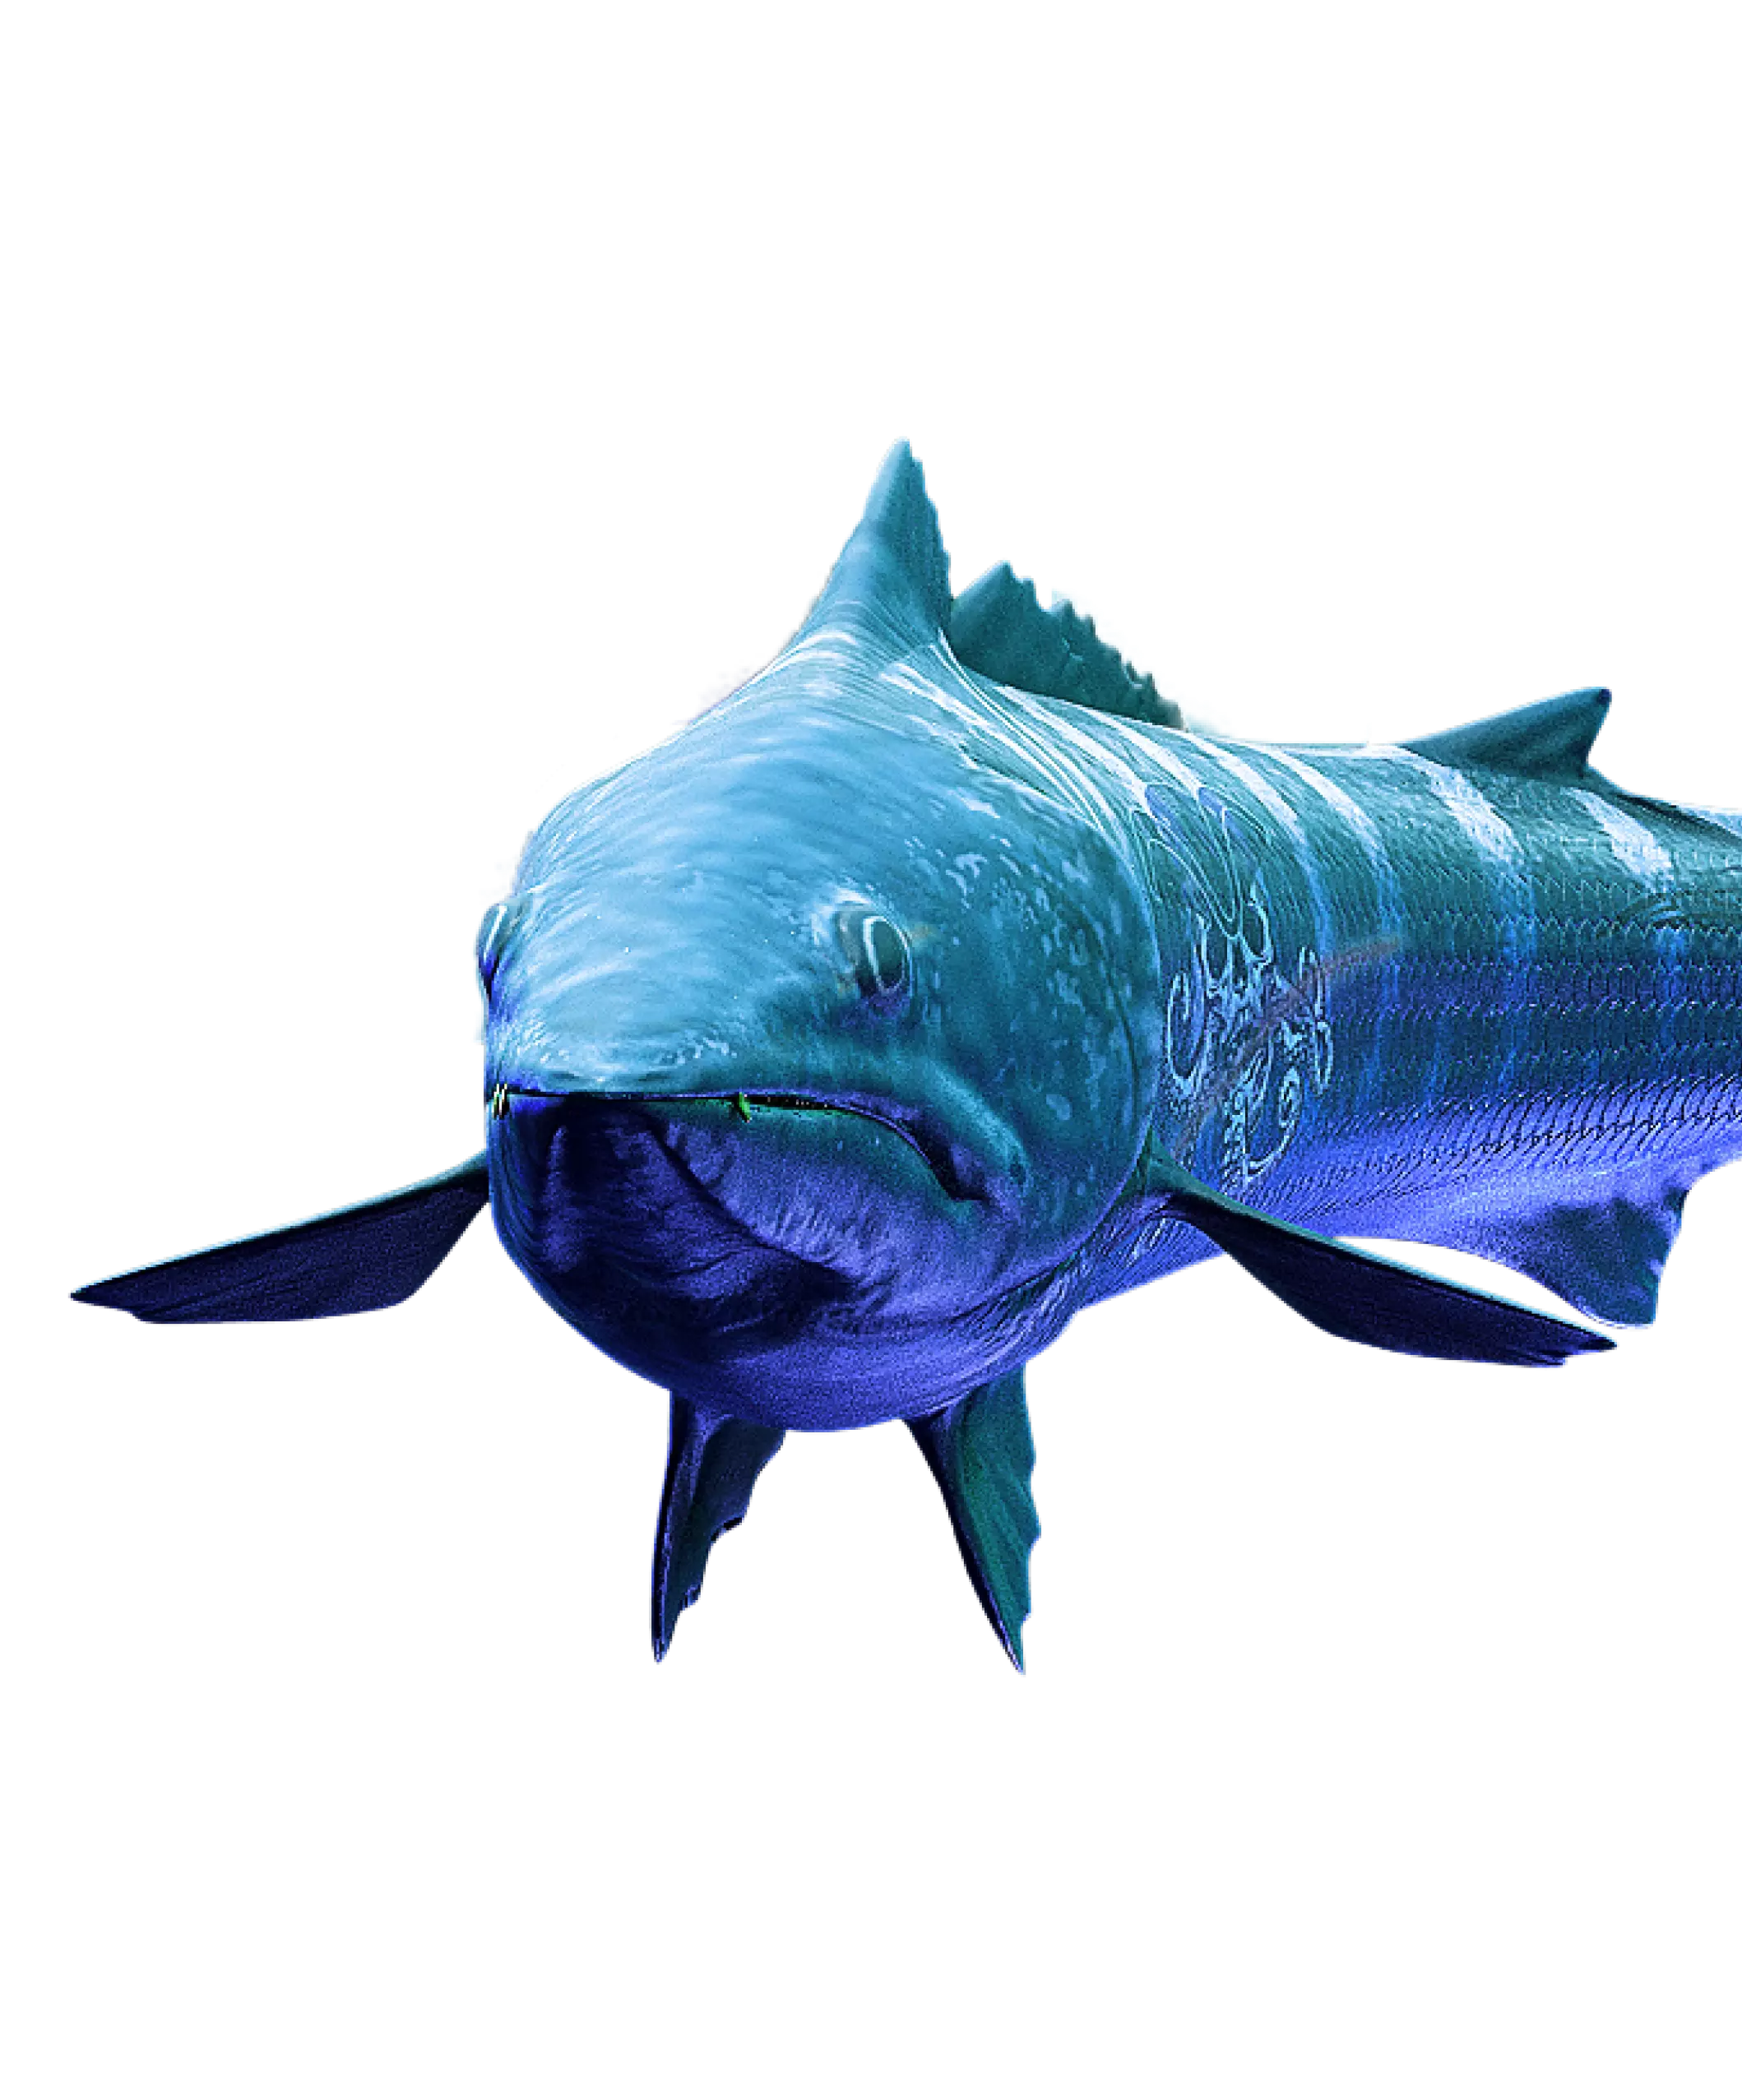 Uma imagem gerada por computador de um peixe grande em um fundo branco